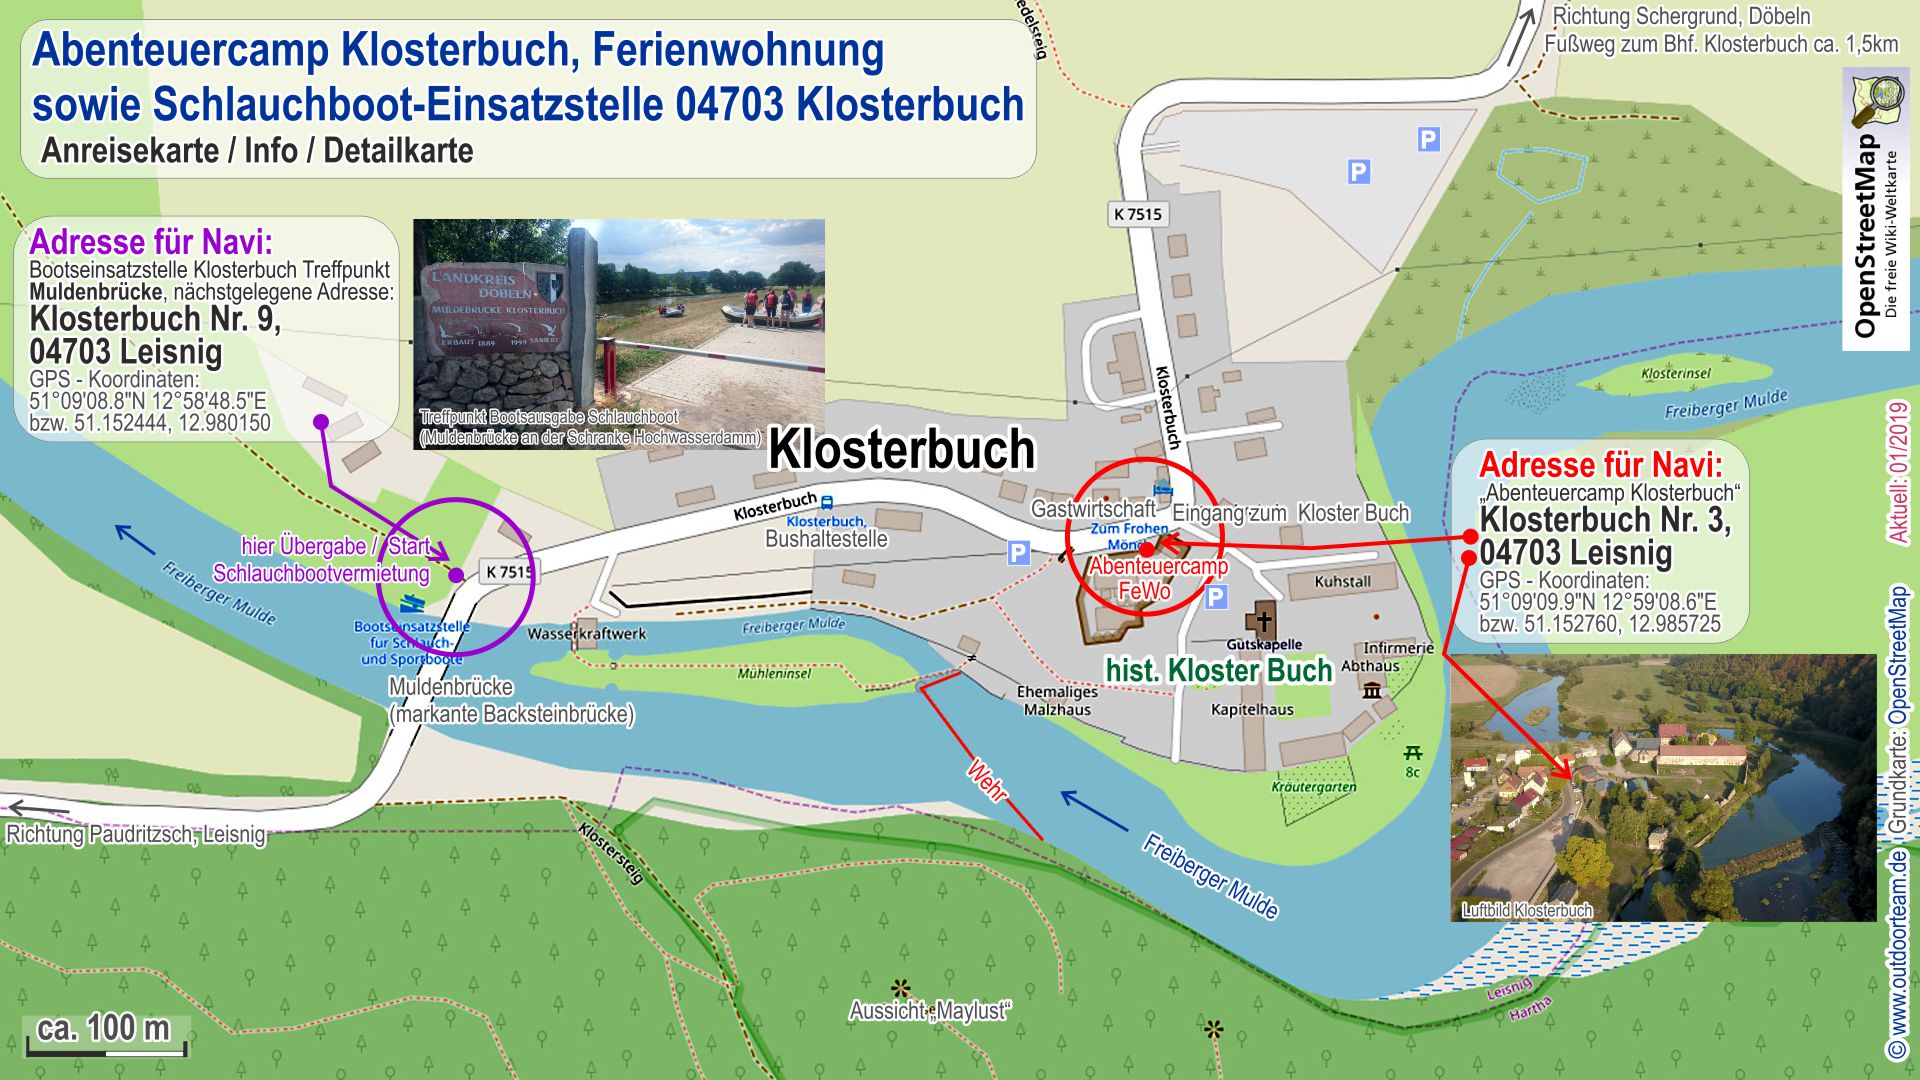 Stadtplan bzw. Detailkarte vom Ort 04703 Klosterbuch und Anreiseinfos zum Abenteuercamp Klosterbuch. (für Vergrößerung ind Bild tippen / klicken!)